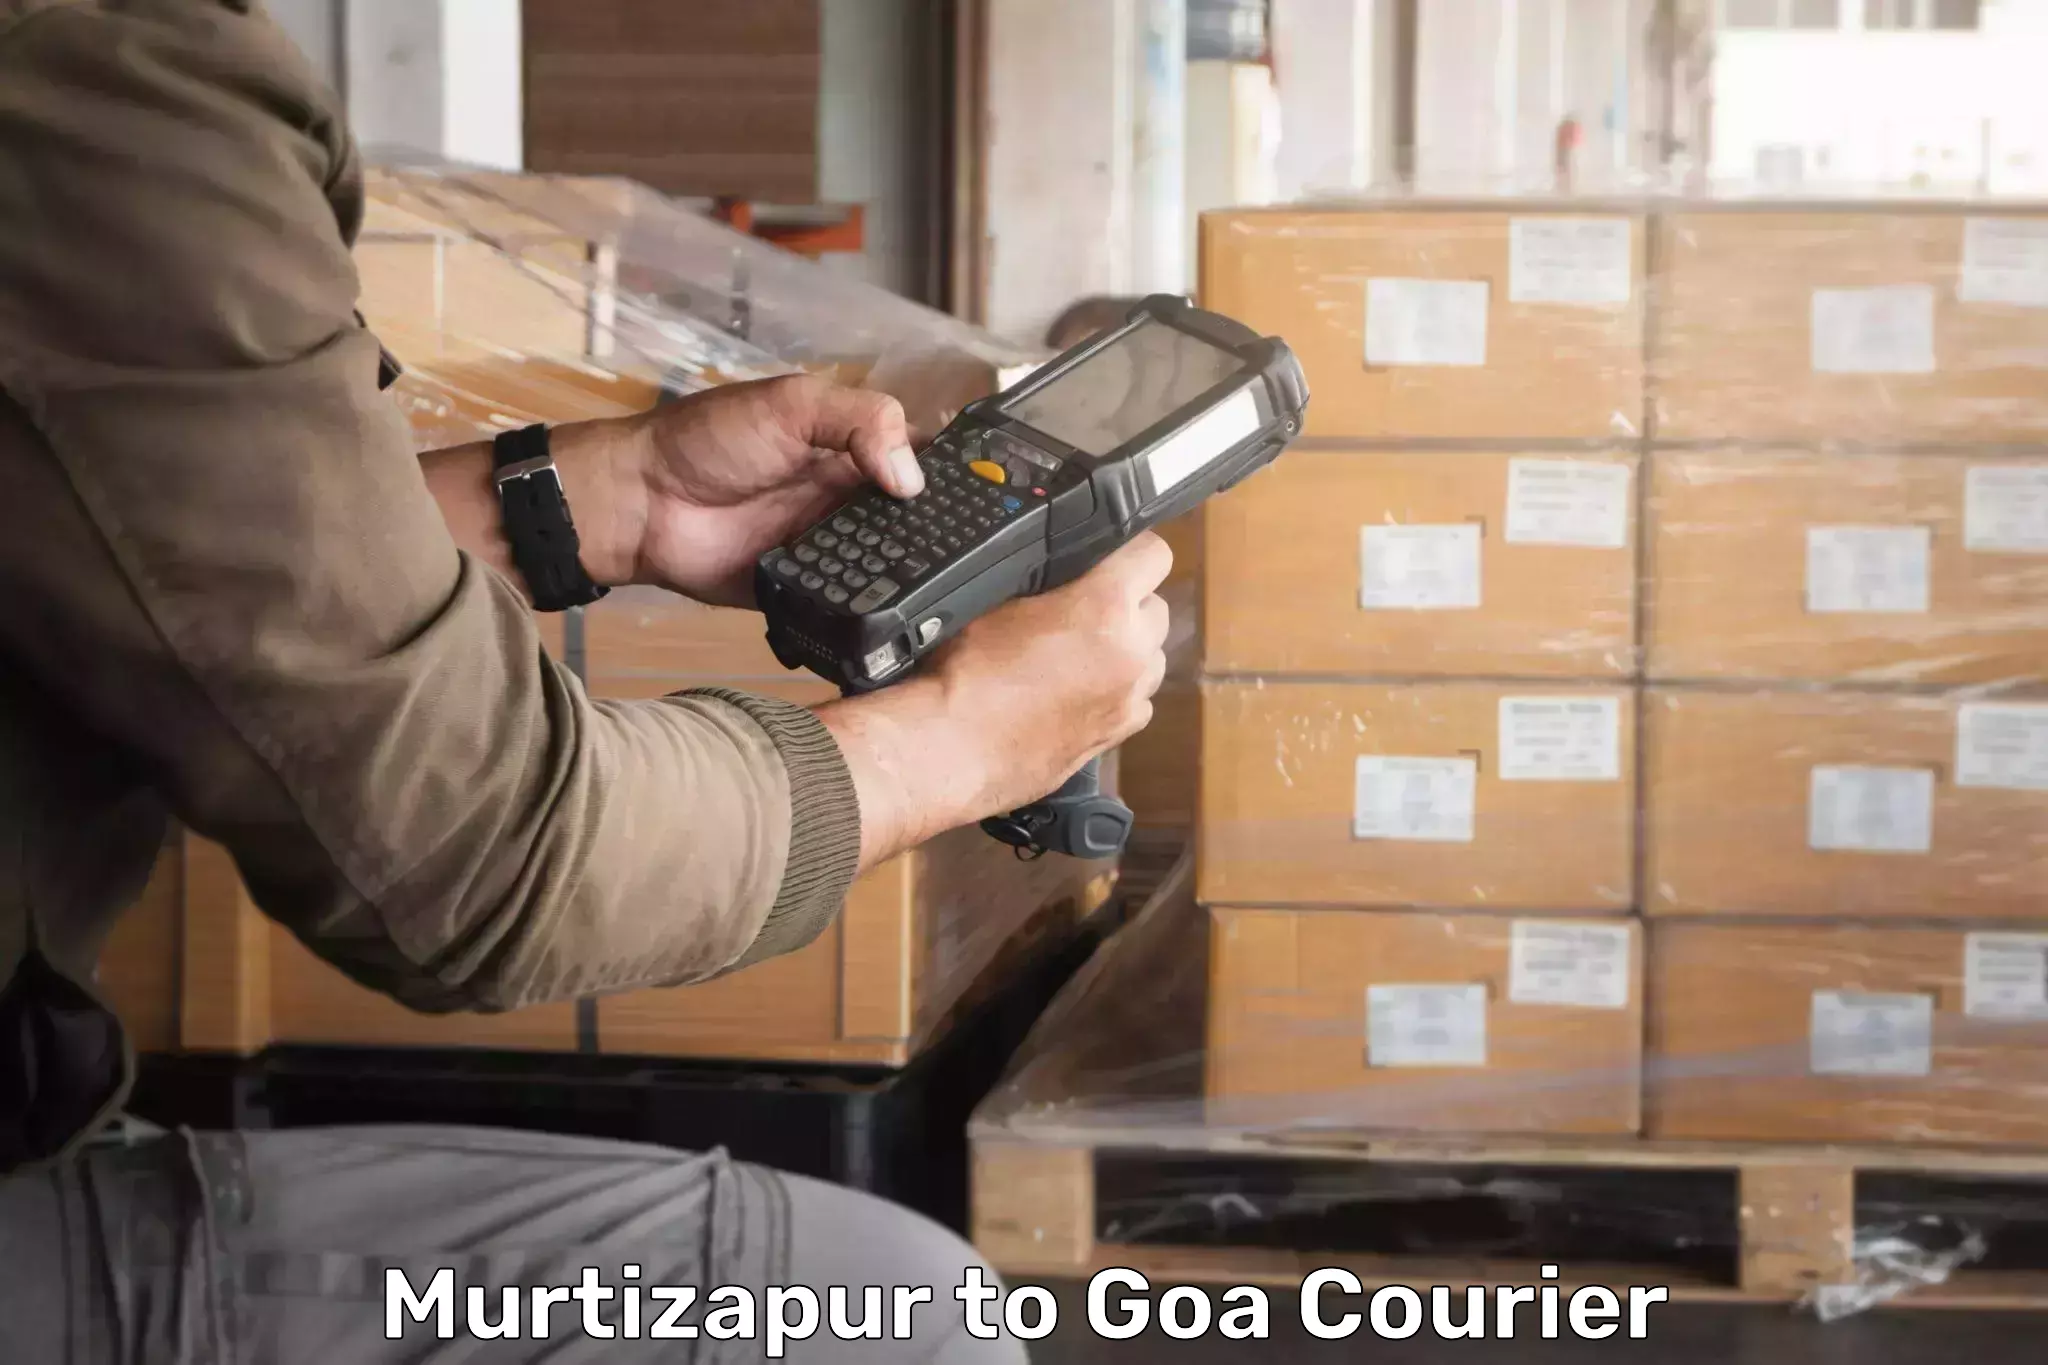 Ocean freight courier Murtizapur to Mormugao Port